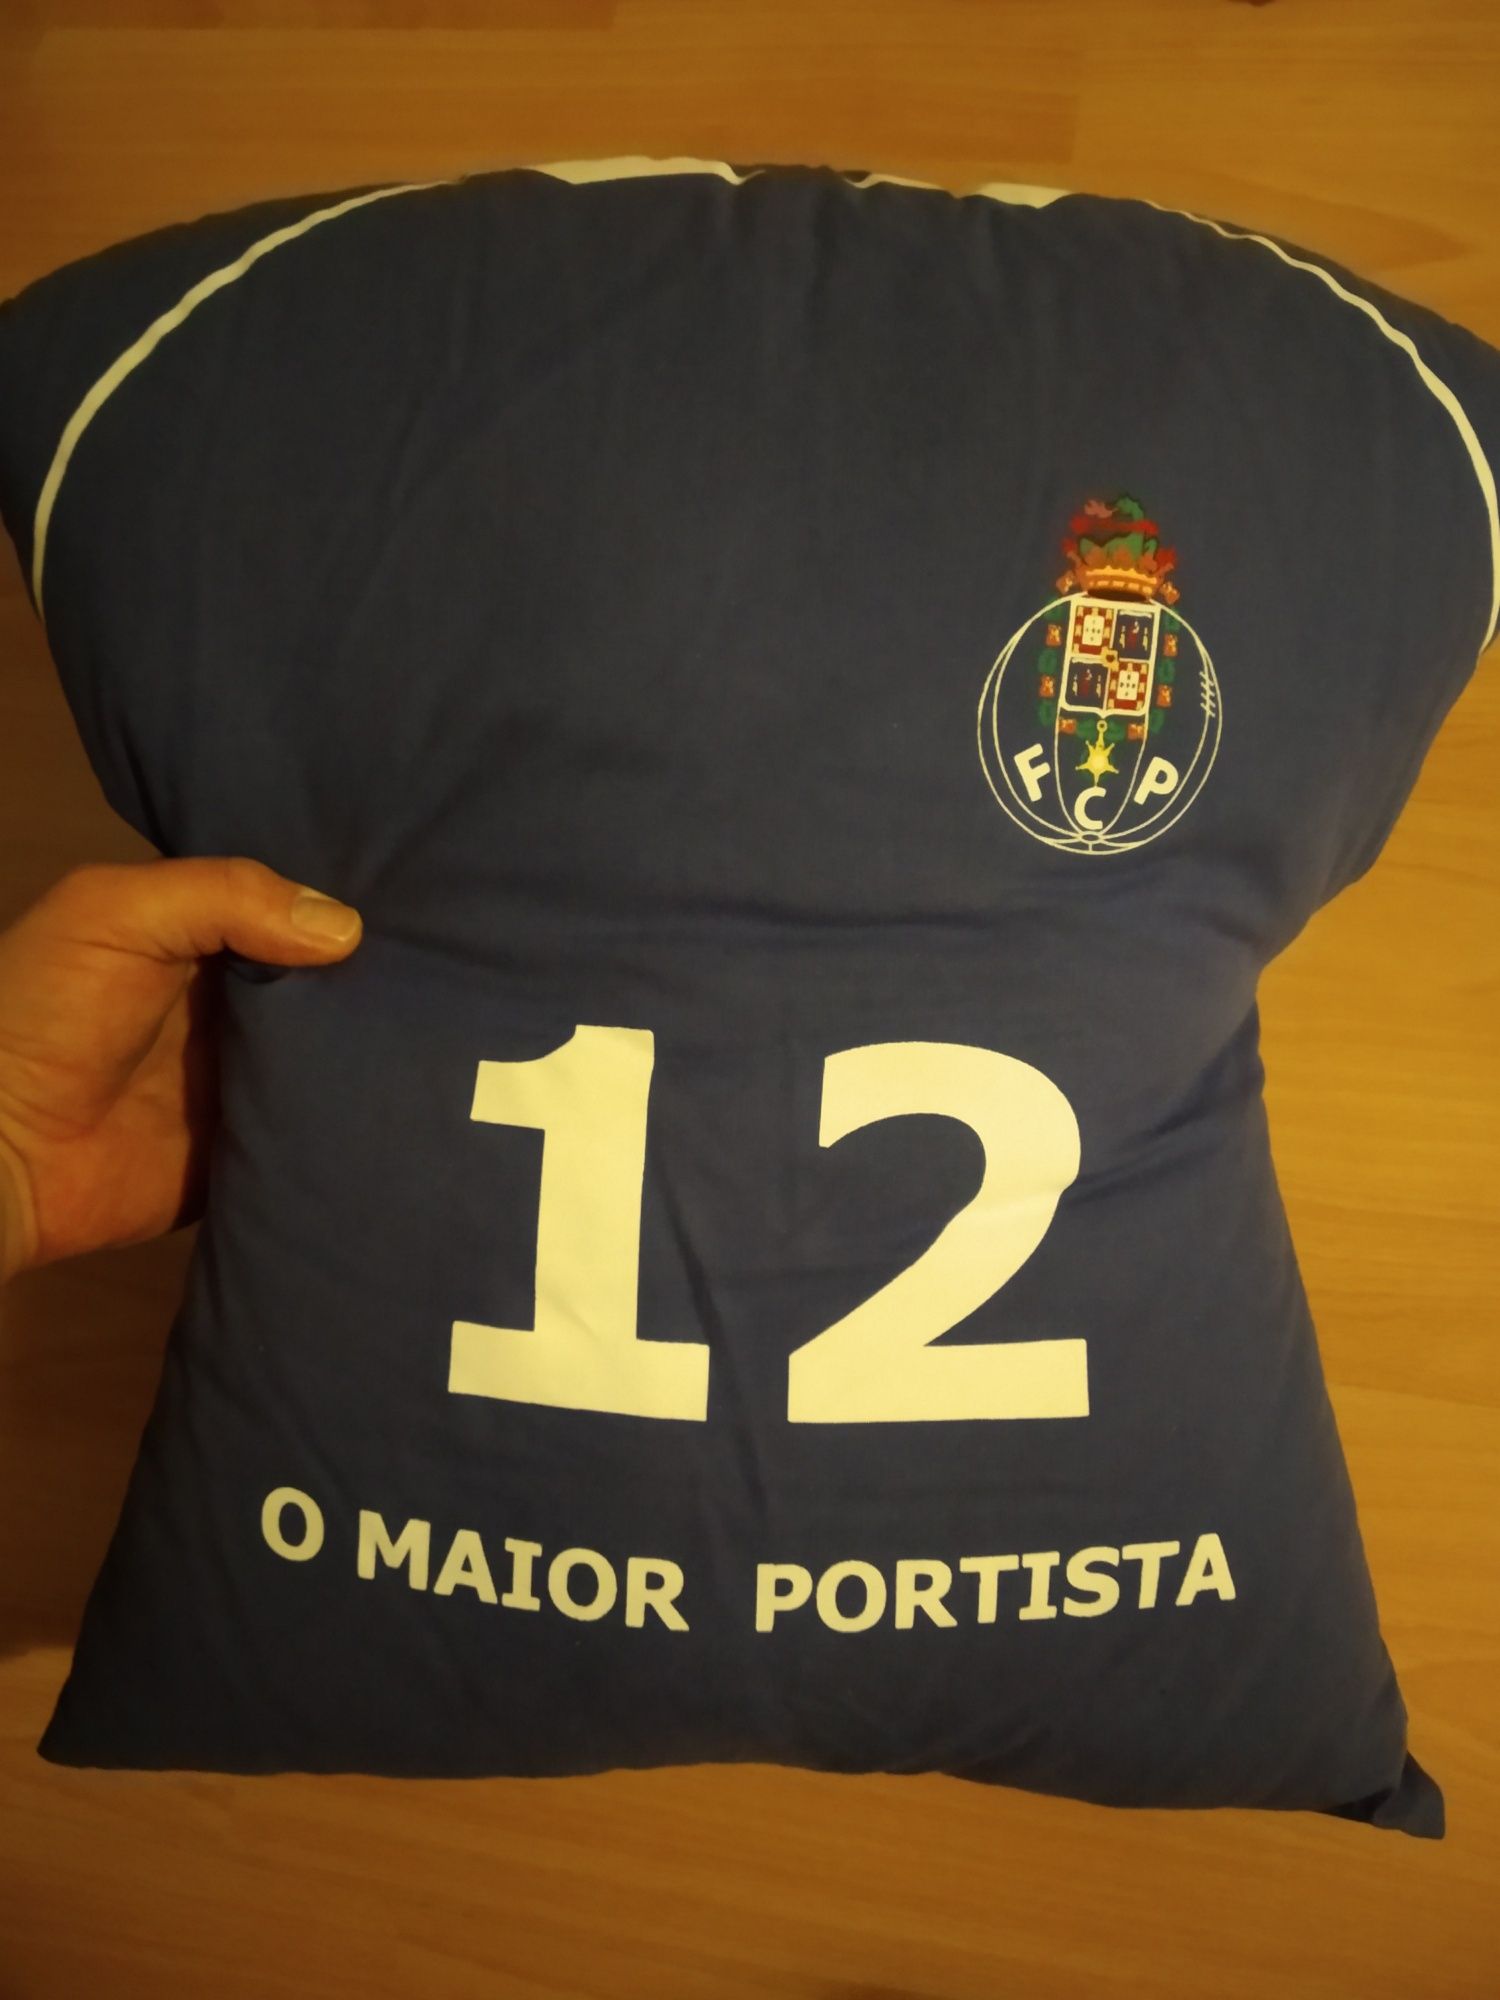 3 Almofadas do FCPorto